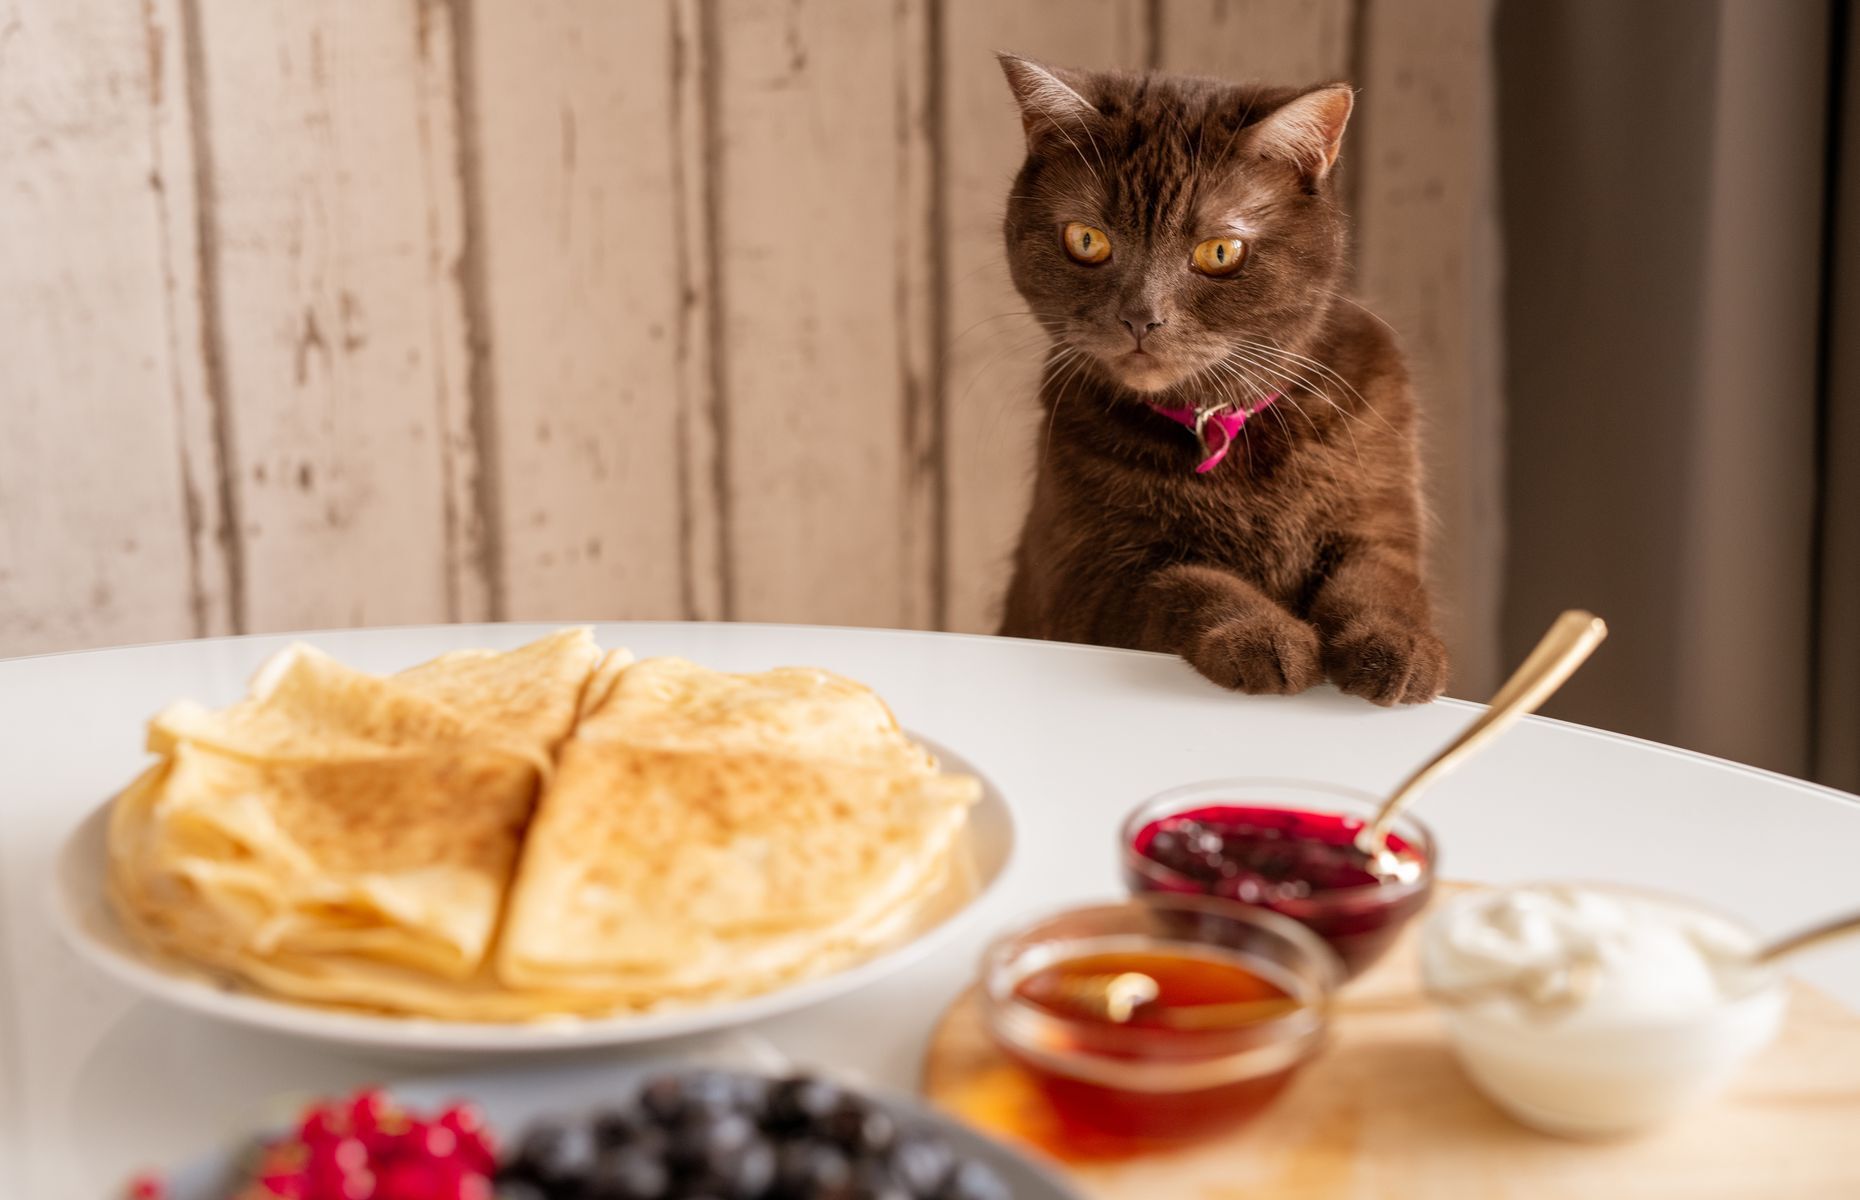 <p>Les chats sont des animaux curieux et parfois gourmands. Ce n’est donc pas surprenant si votre chat rôde autour de la table quand vous mangez… et qu’il essaie d’en attraper une portion pour lui! Cependant, <a href="https://www.purina.ca/fr/articles/cat/nutrition/what-not-feed-cats">évitez de lui donner des restes</a> qui ne sont pas adaptés à sa diète, et qui peuvent être trop salés ou trop caloriques.</p>